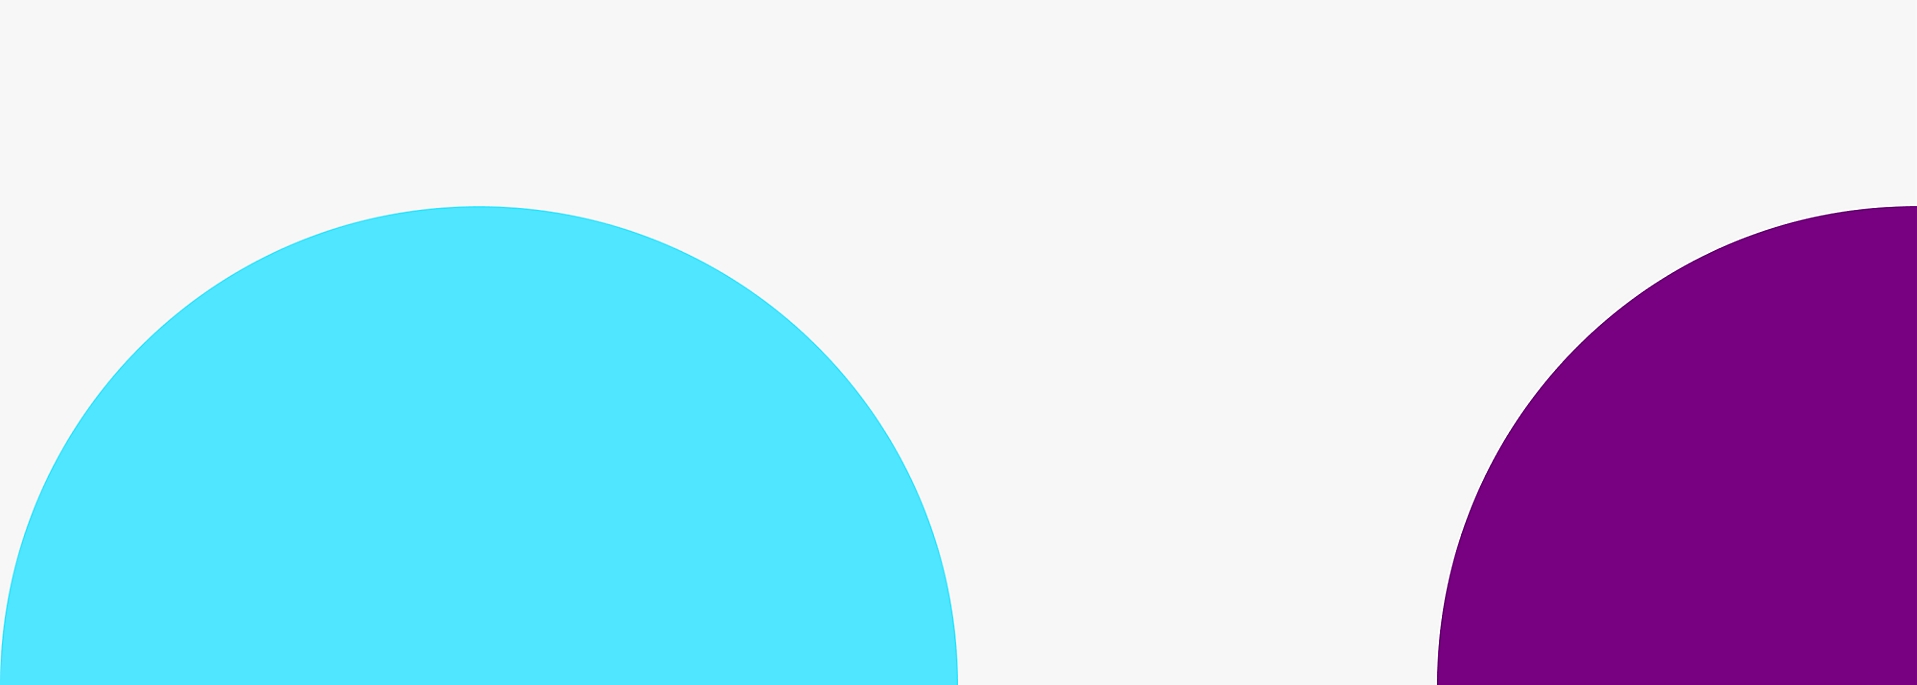 שני עיגולים גדולים החופפים חלקית עם עיגול כחול משמאל ועיגול סגול מימין 